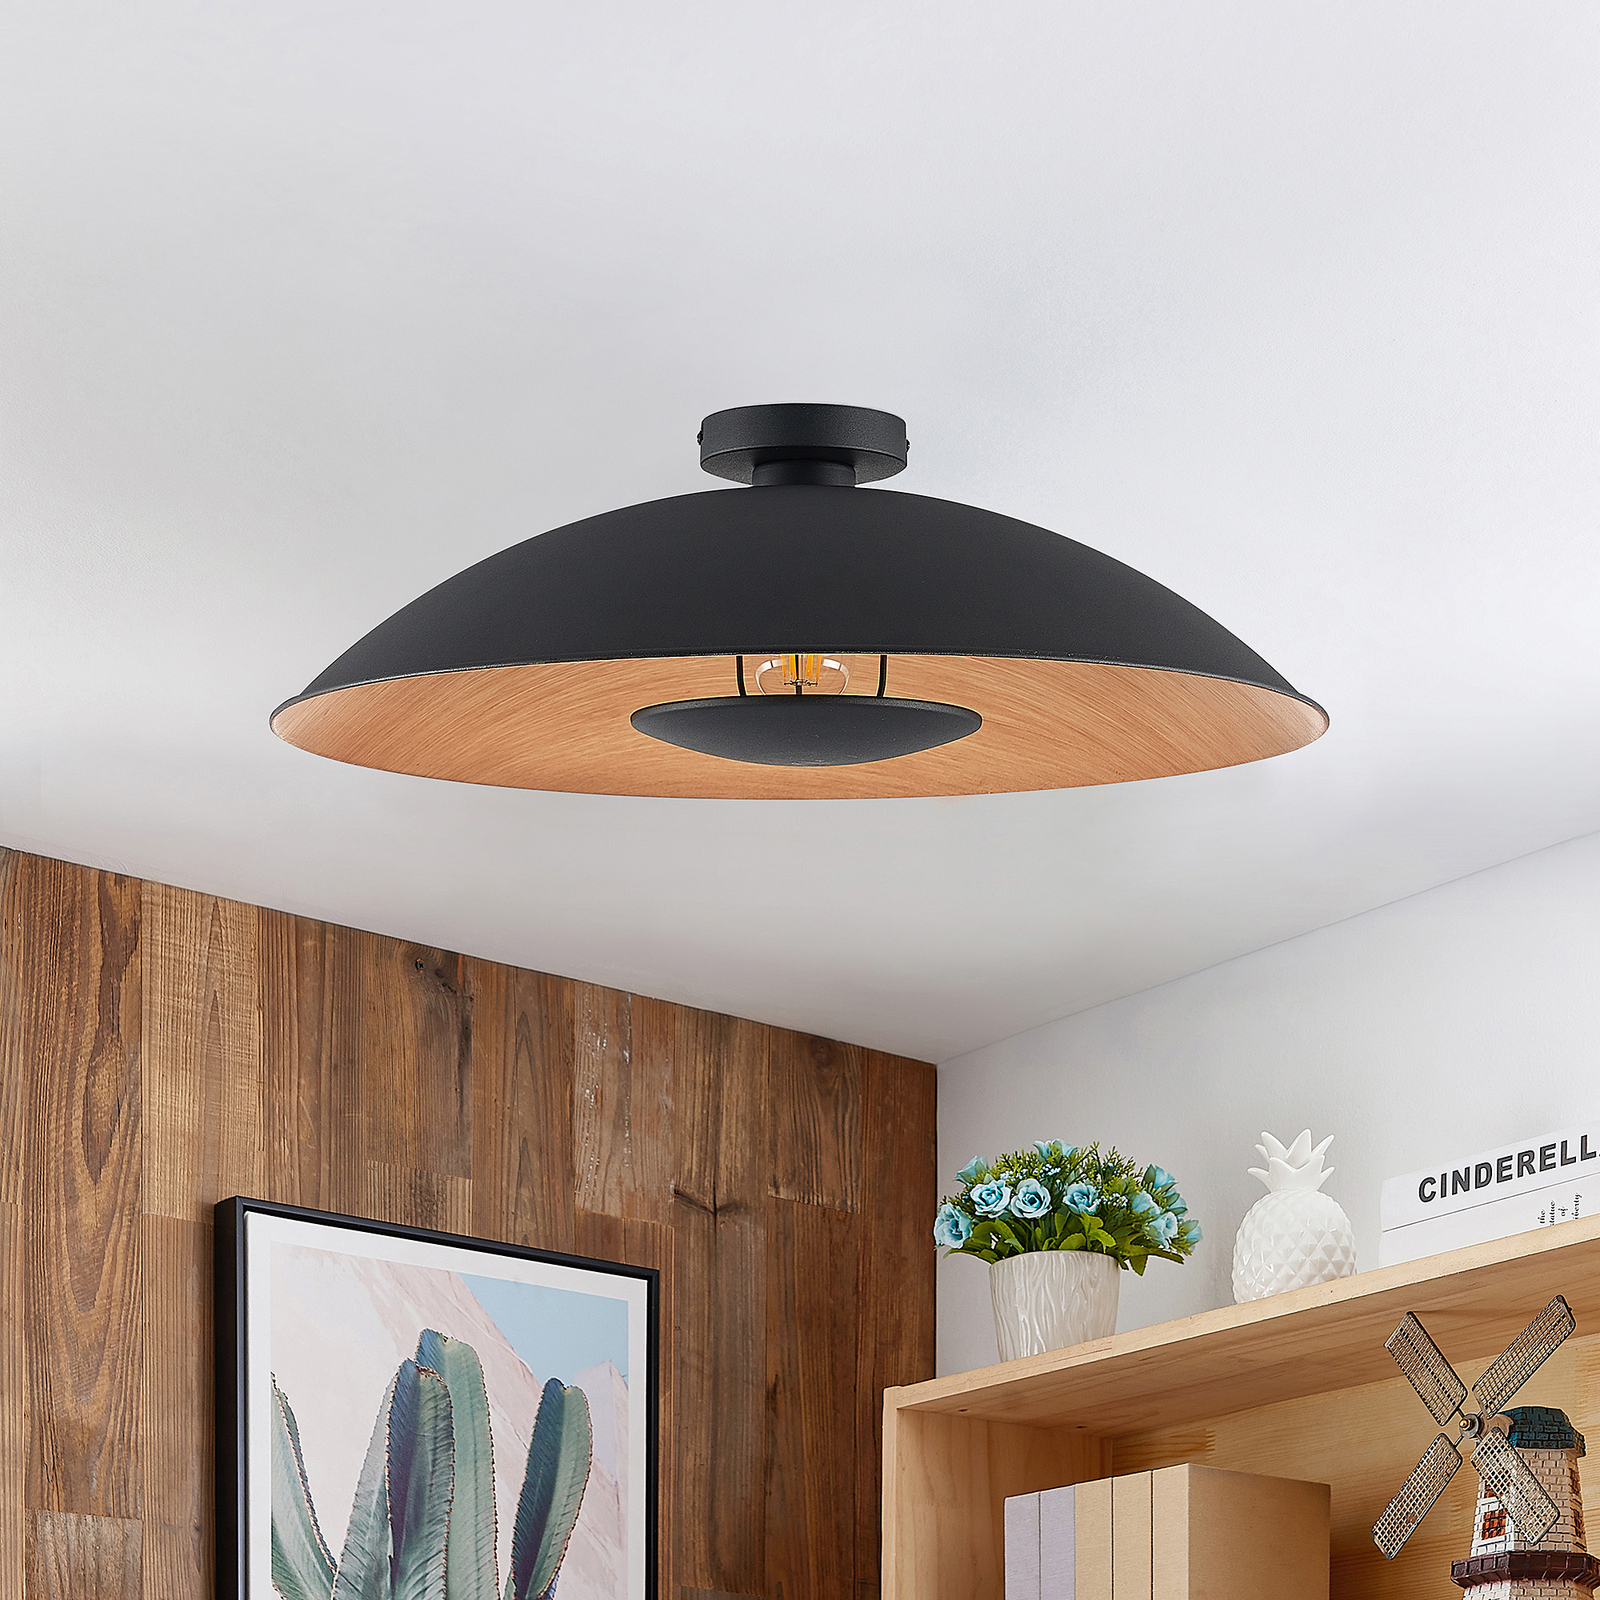 Lindby Entony plafondlamp, zwart, houtkleur